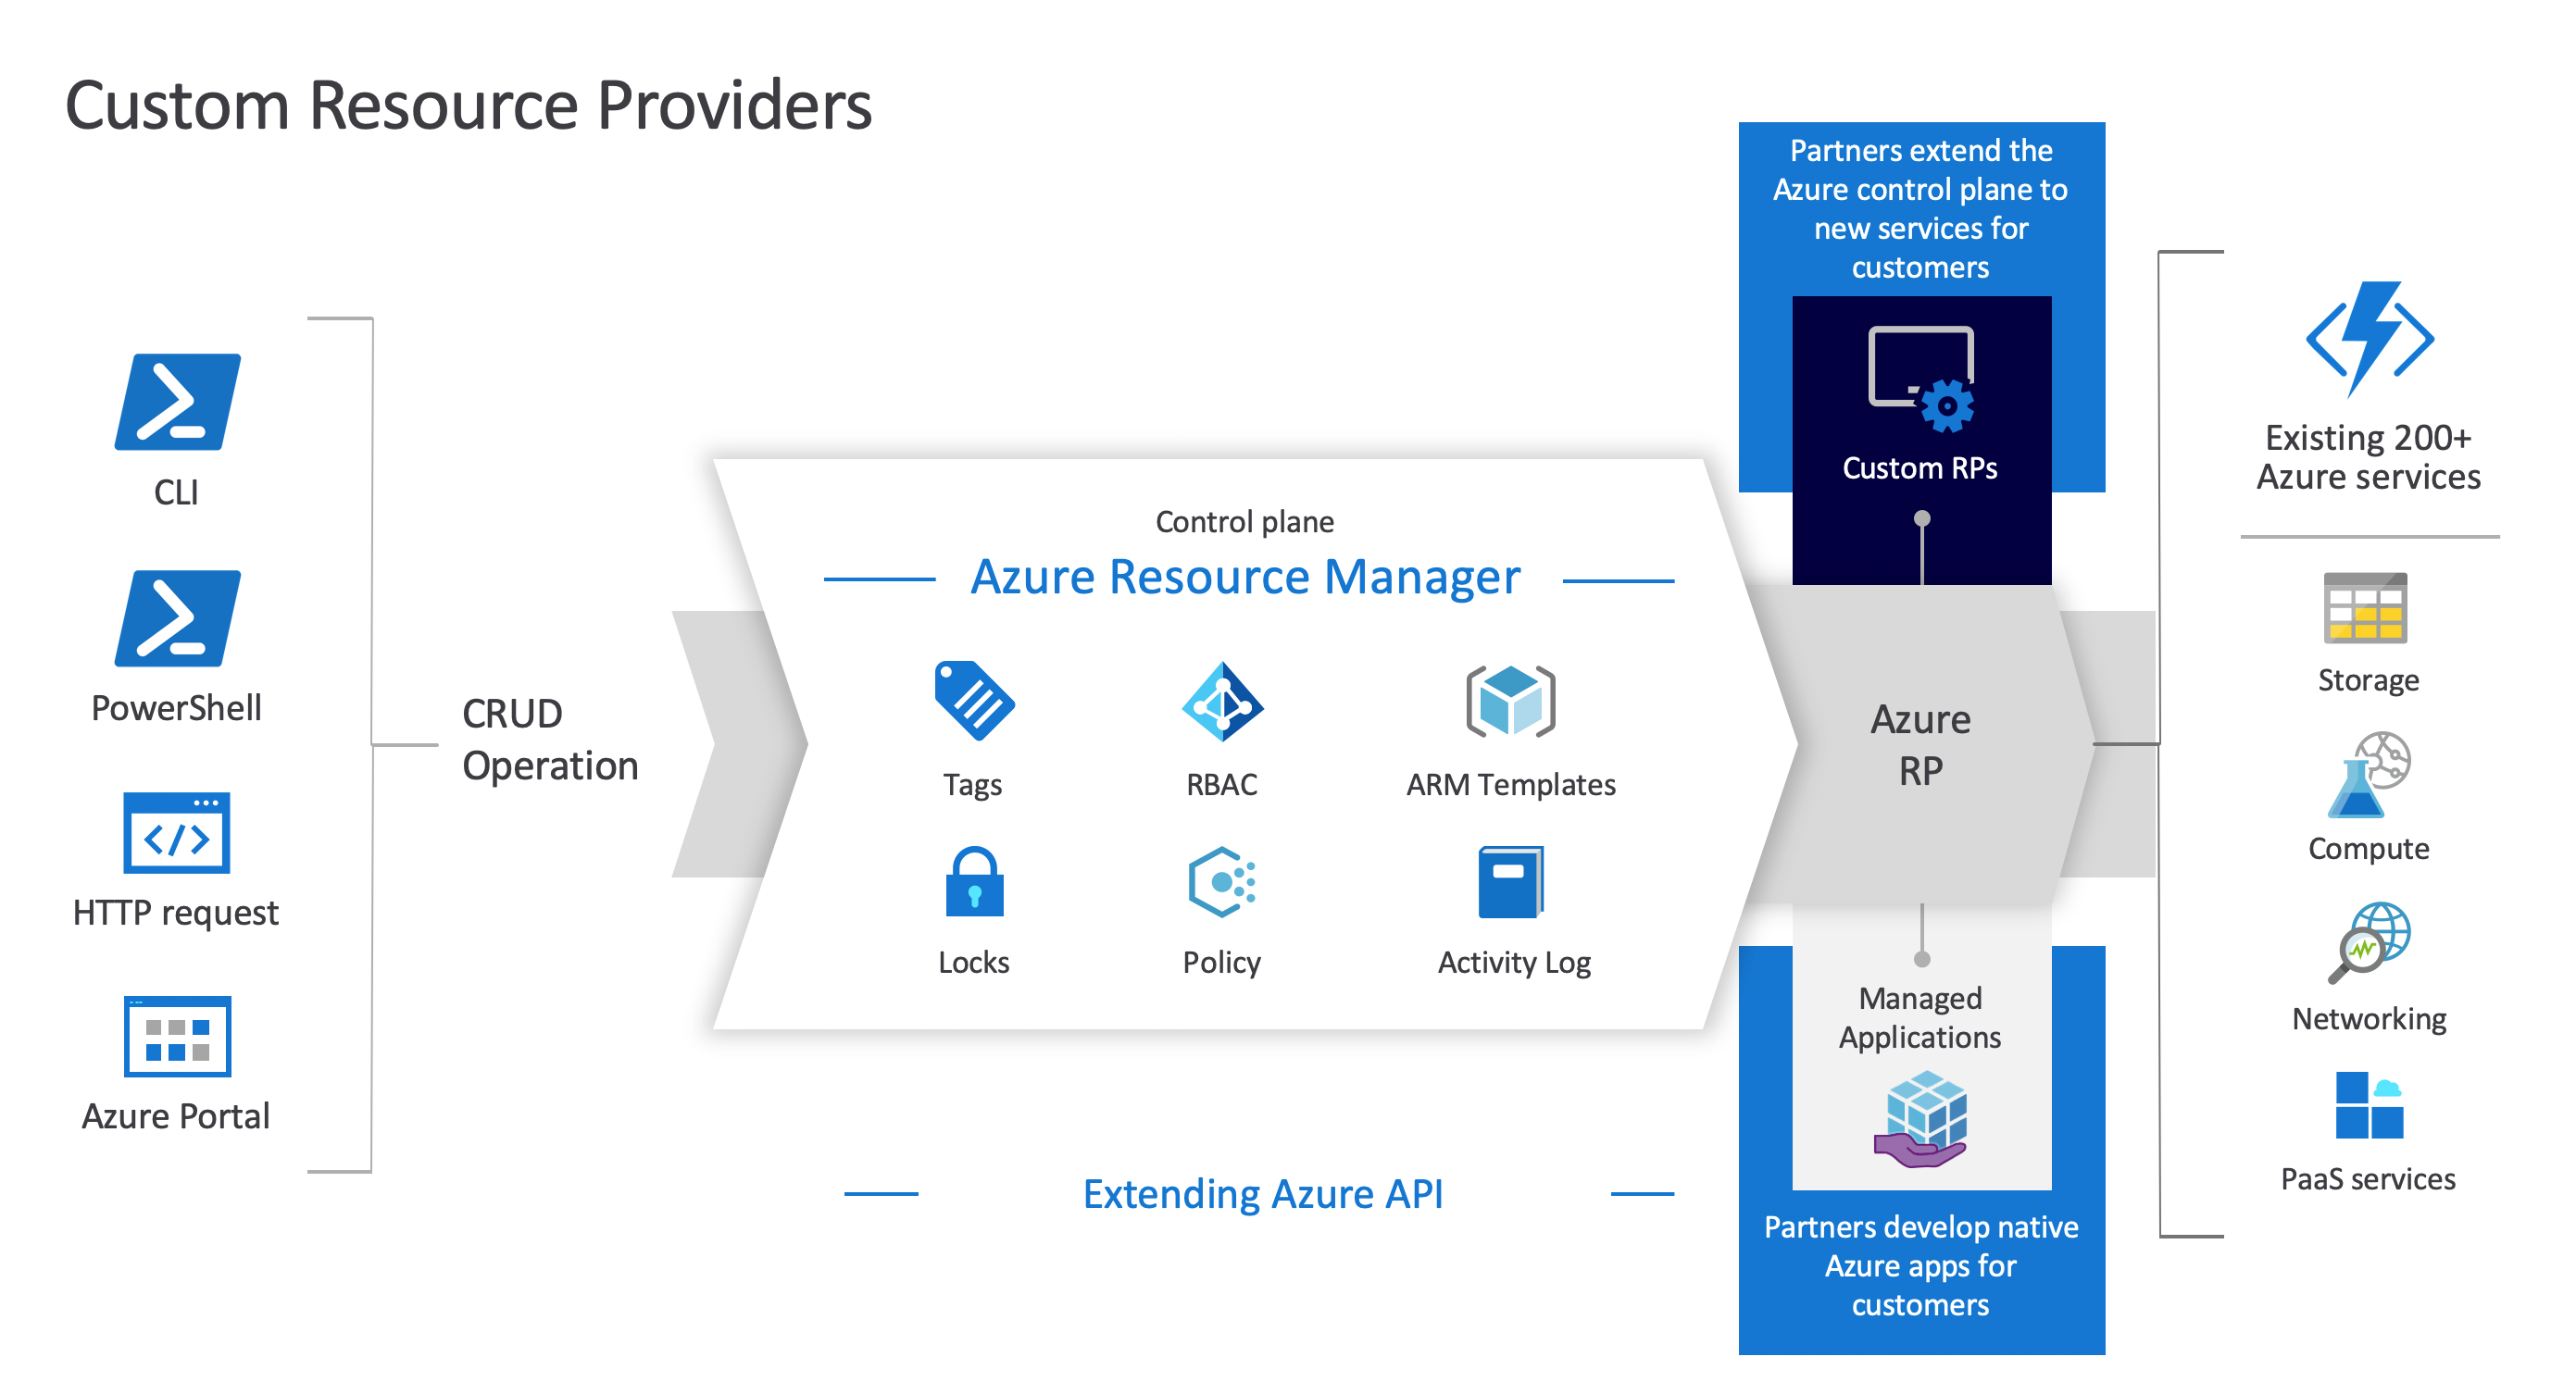 رسم تخطيطي لموفري موارد Azure المخصصة، يعرض العلاقة بين Resource Manager Azure وموفري الموارد المخصصة والموارد.